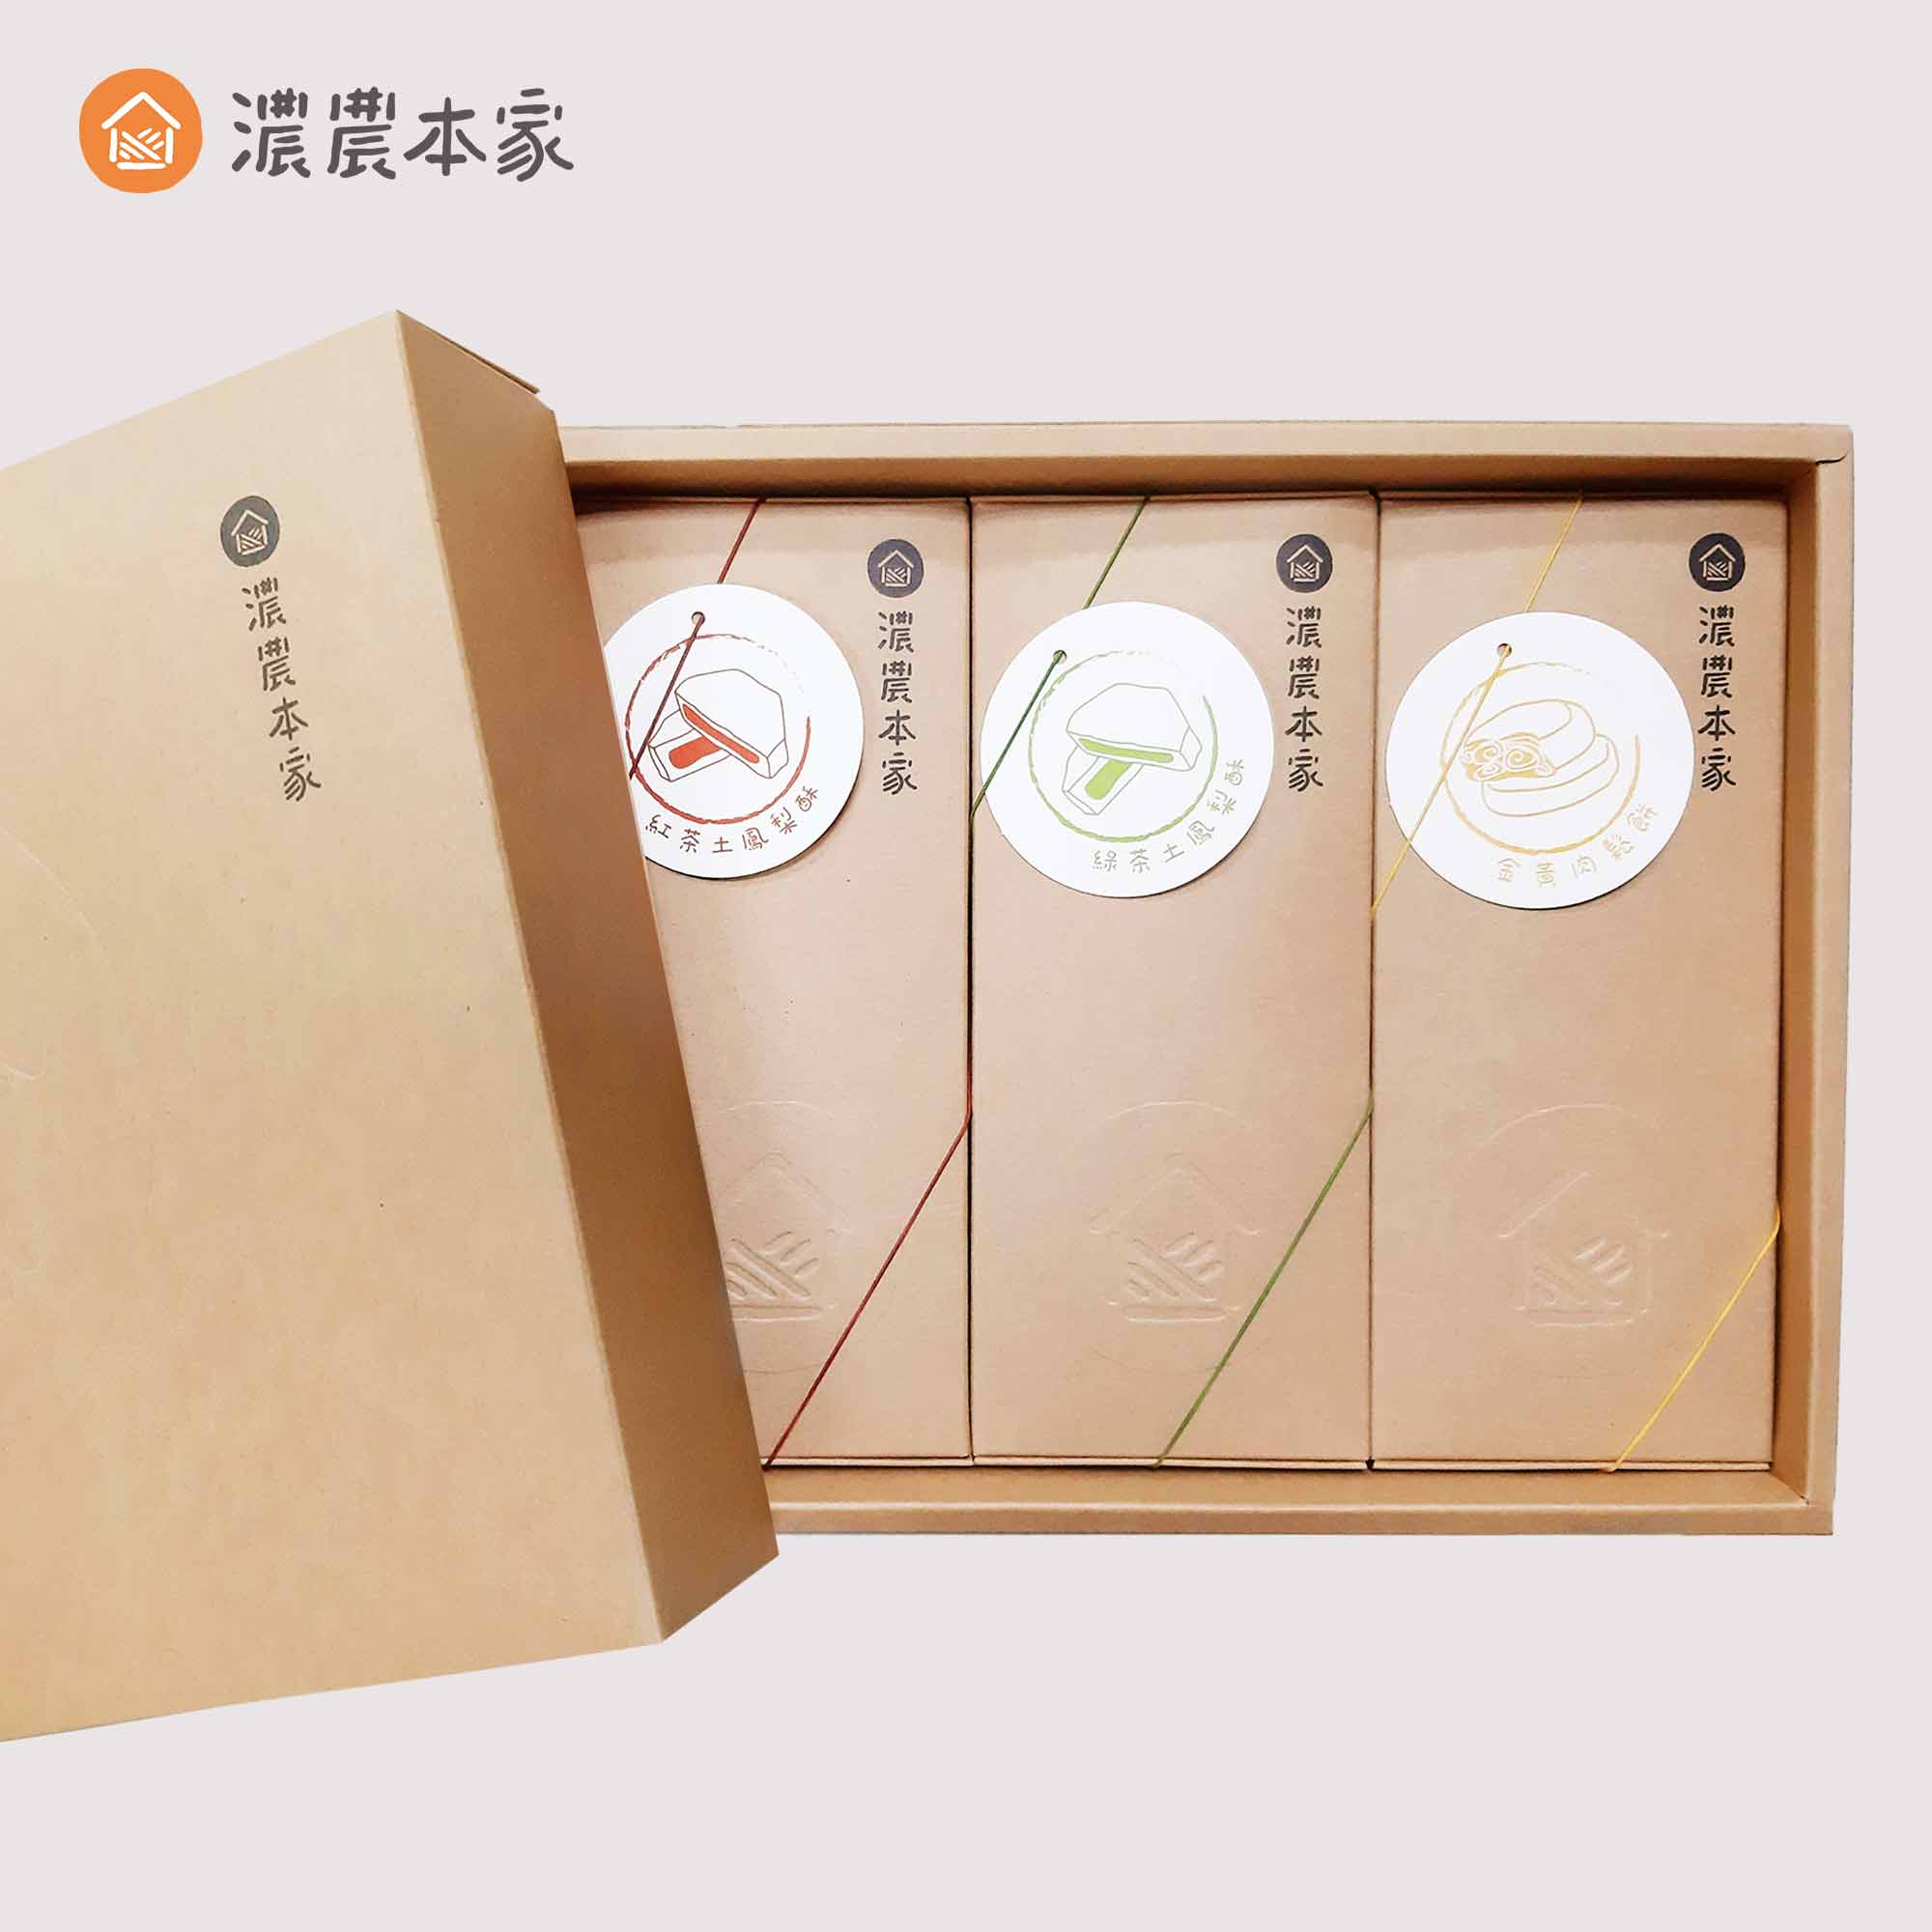 人氣過年禮盒推薦平價CP值高的台灣茶葉鳳梨酥伴手禮盒